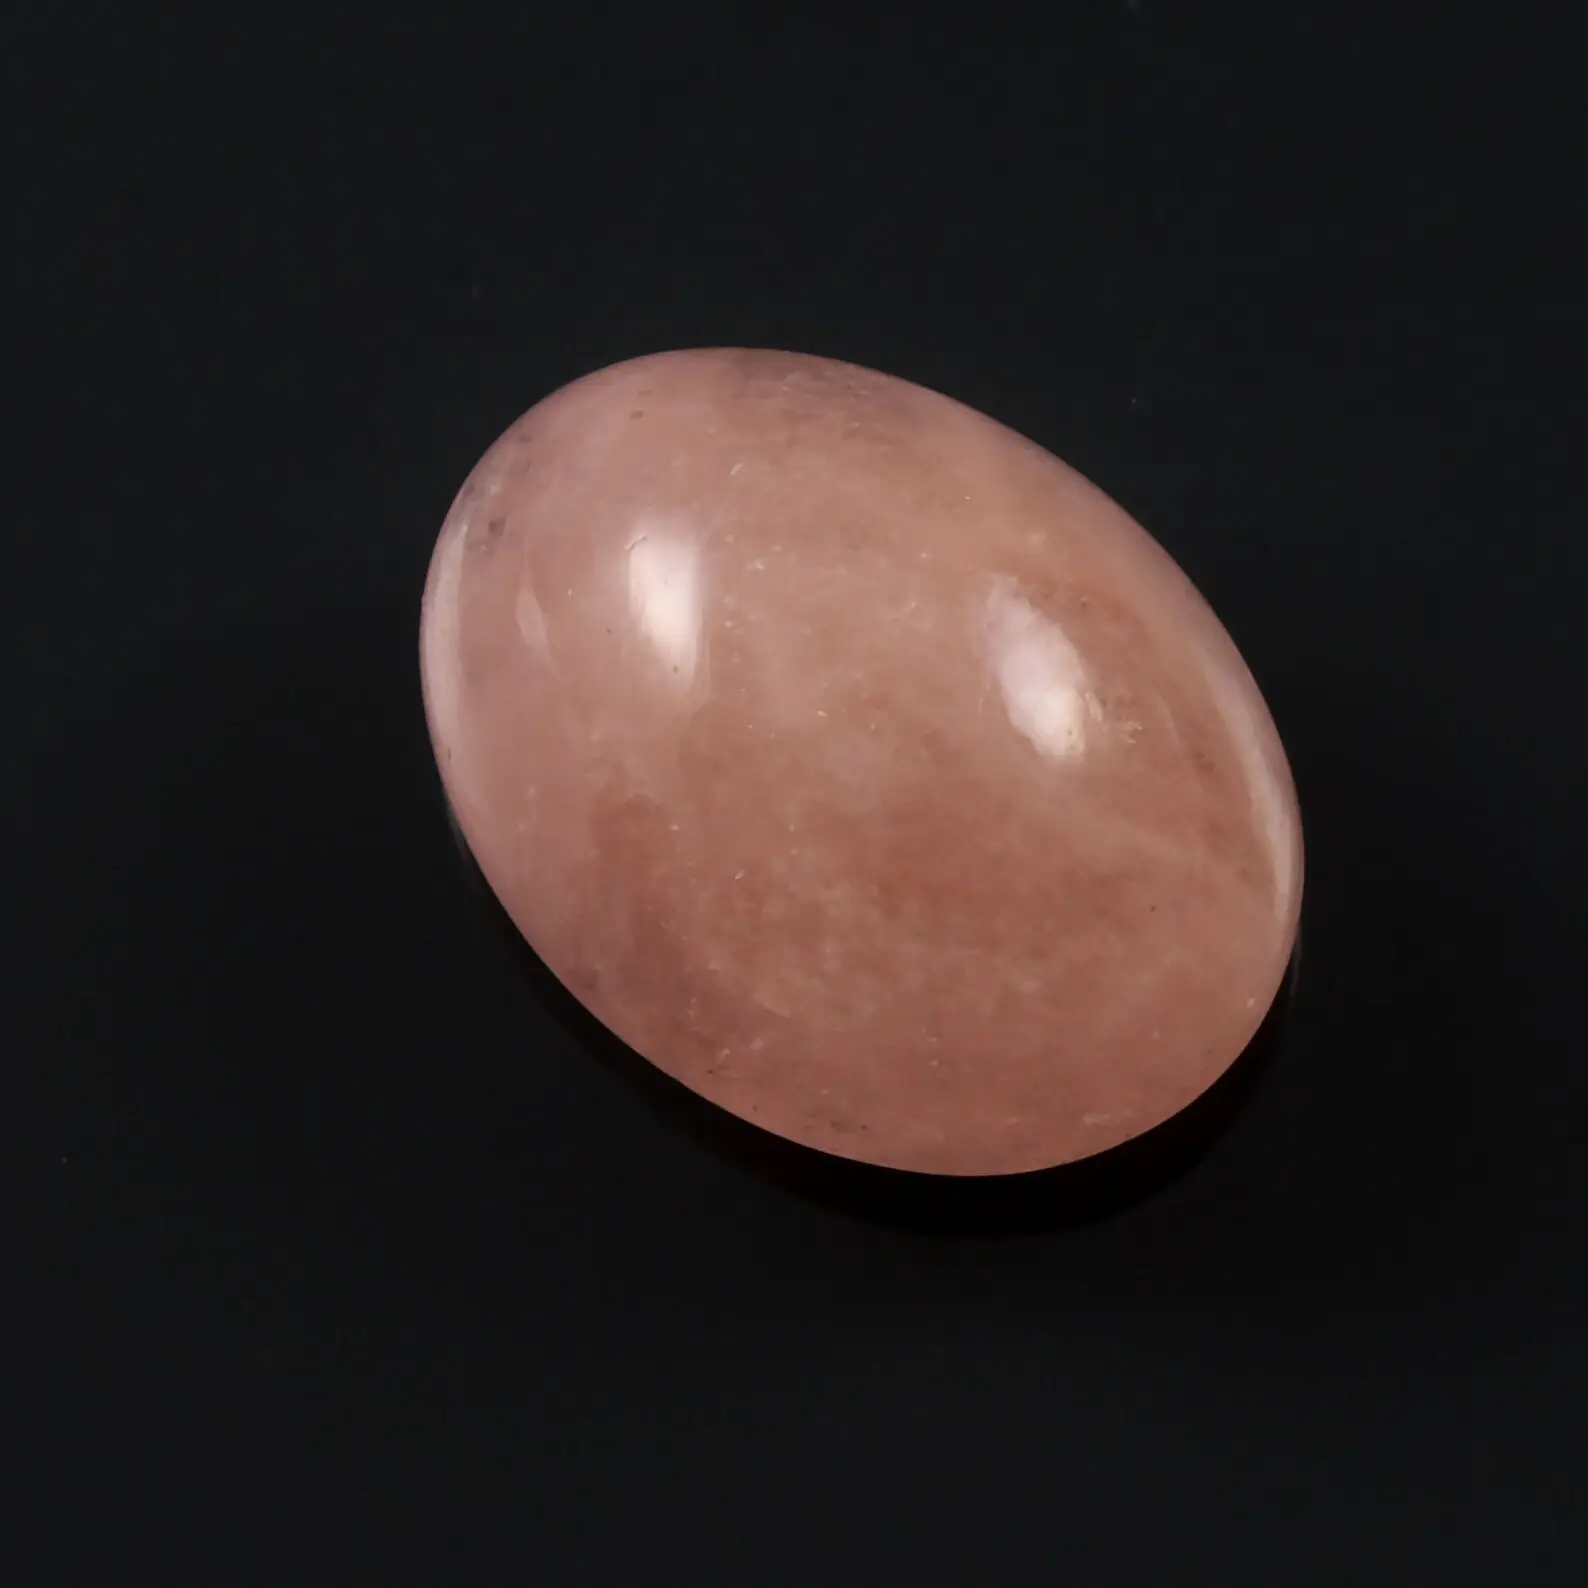 حجر موراغانيتي وردي بيضاوي الشكل من الأحجار الرخوة